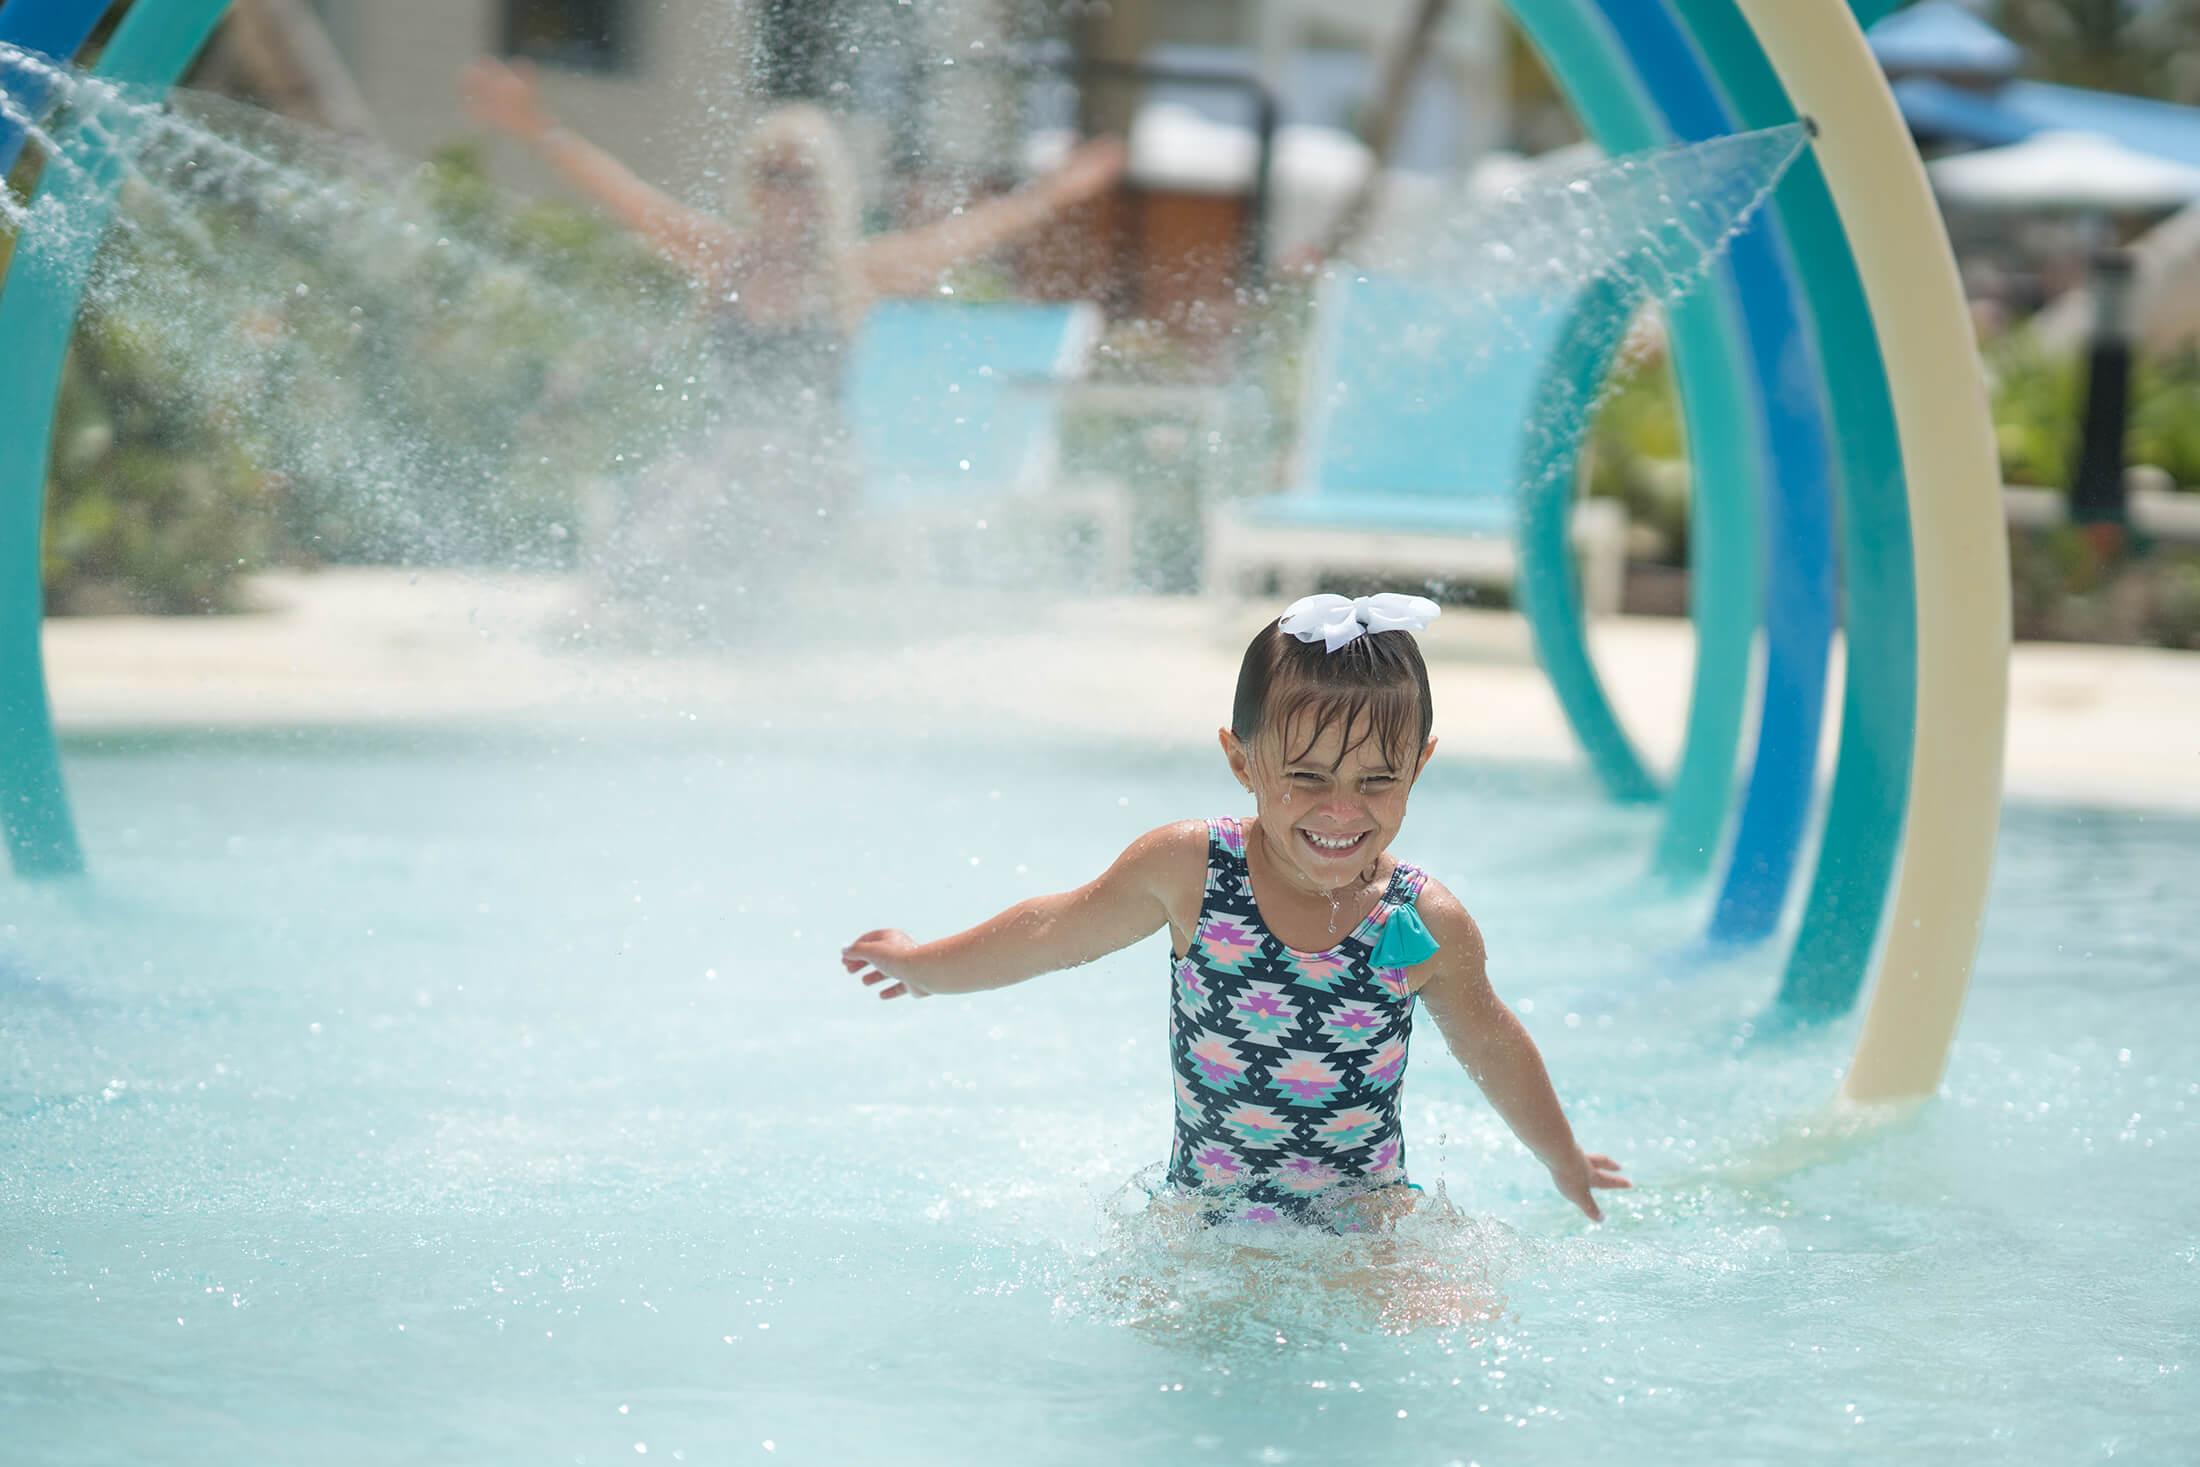 A kid splashing in a Margaritaville resort pool